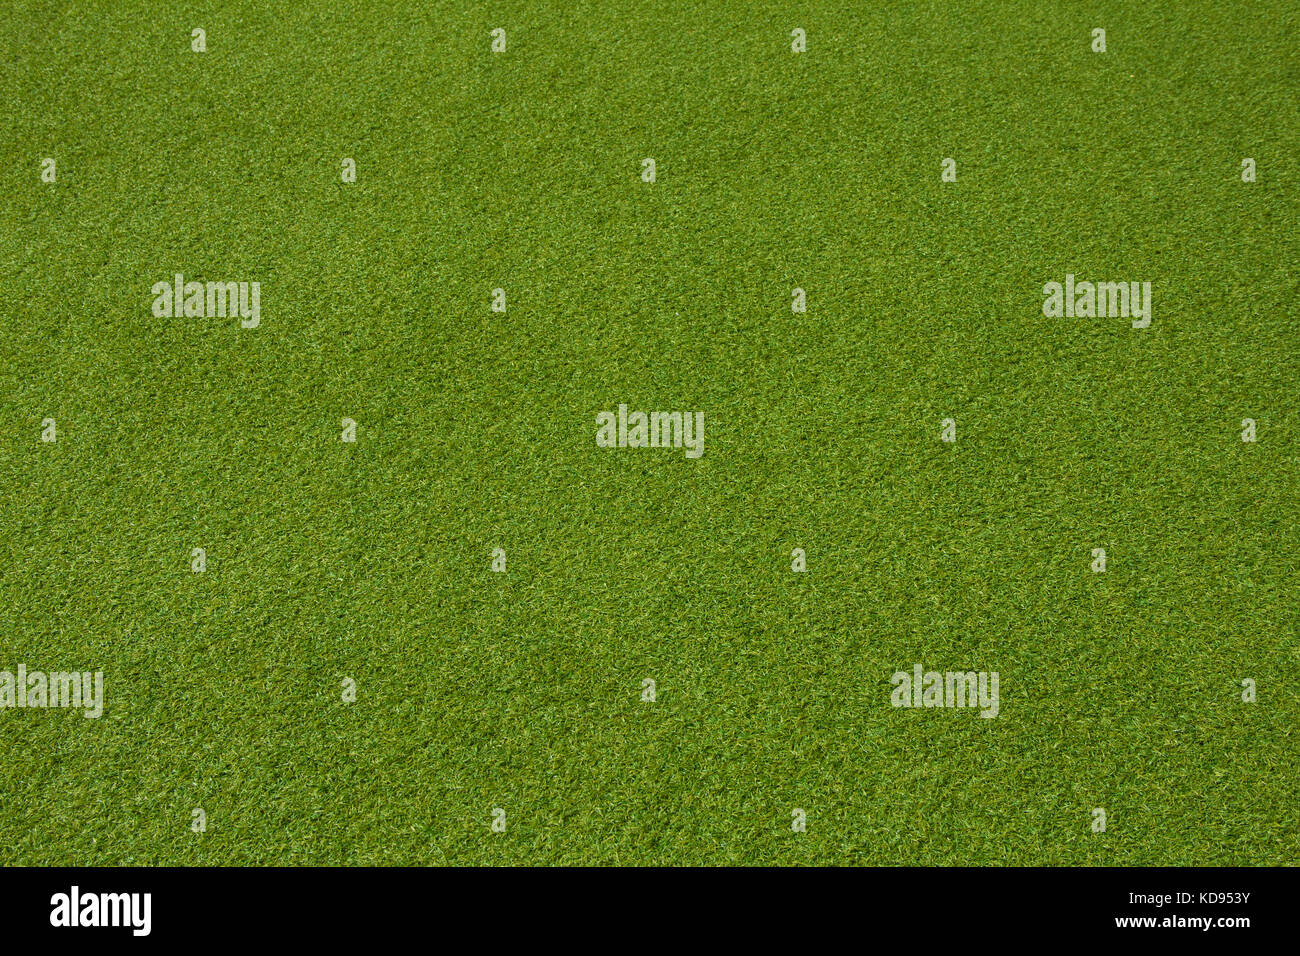 Grass texture. grass background. artificial grass Stock Photo